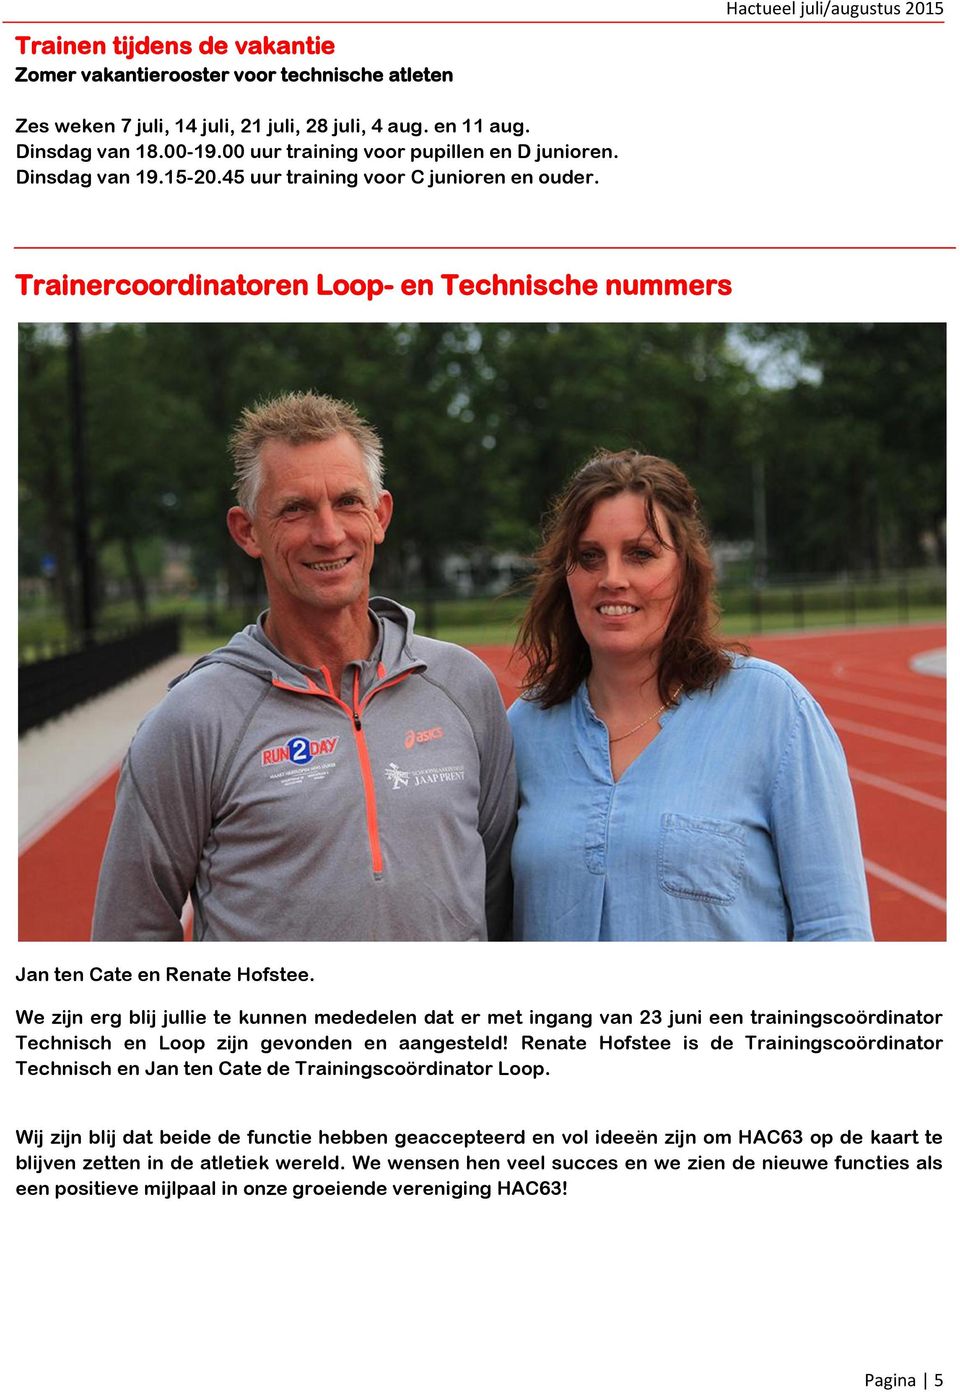 We zijn erg blij jullie te kunnen mededelen dat er met ingang van 23 juni een trainingscoördinator Technisch en Loop zijn gevonden en aangesteld!